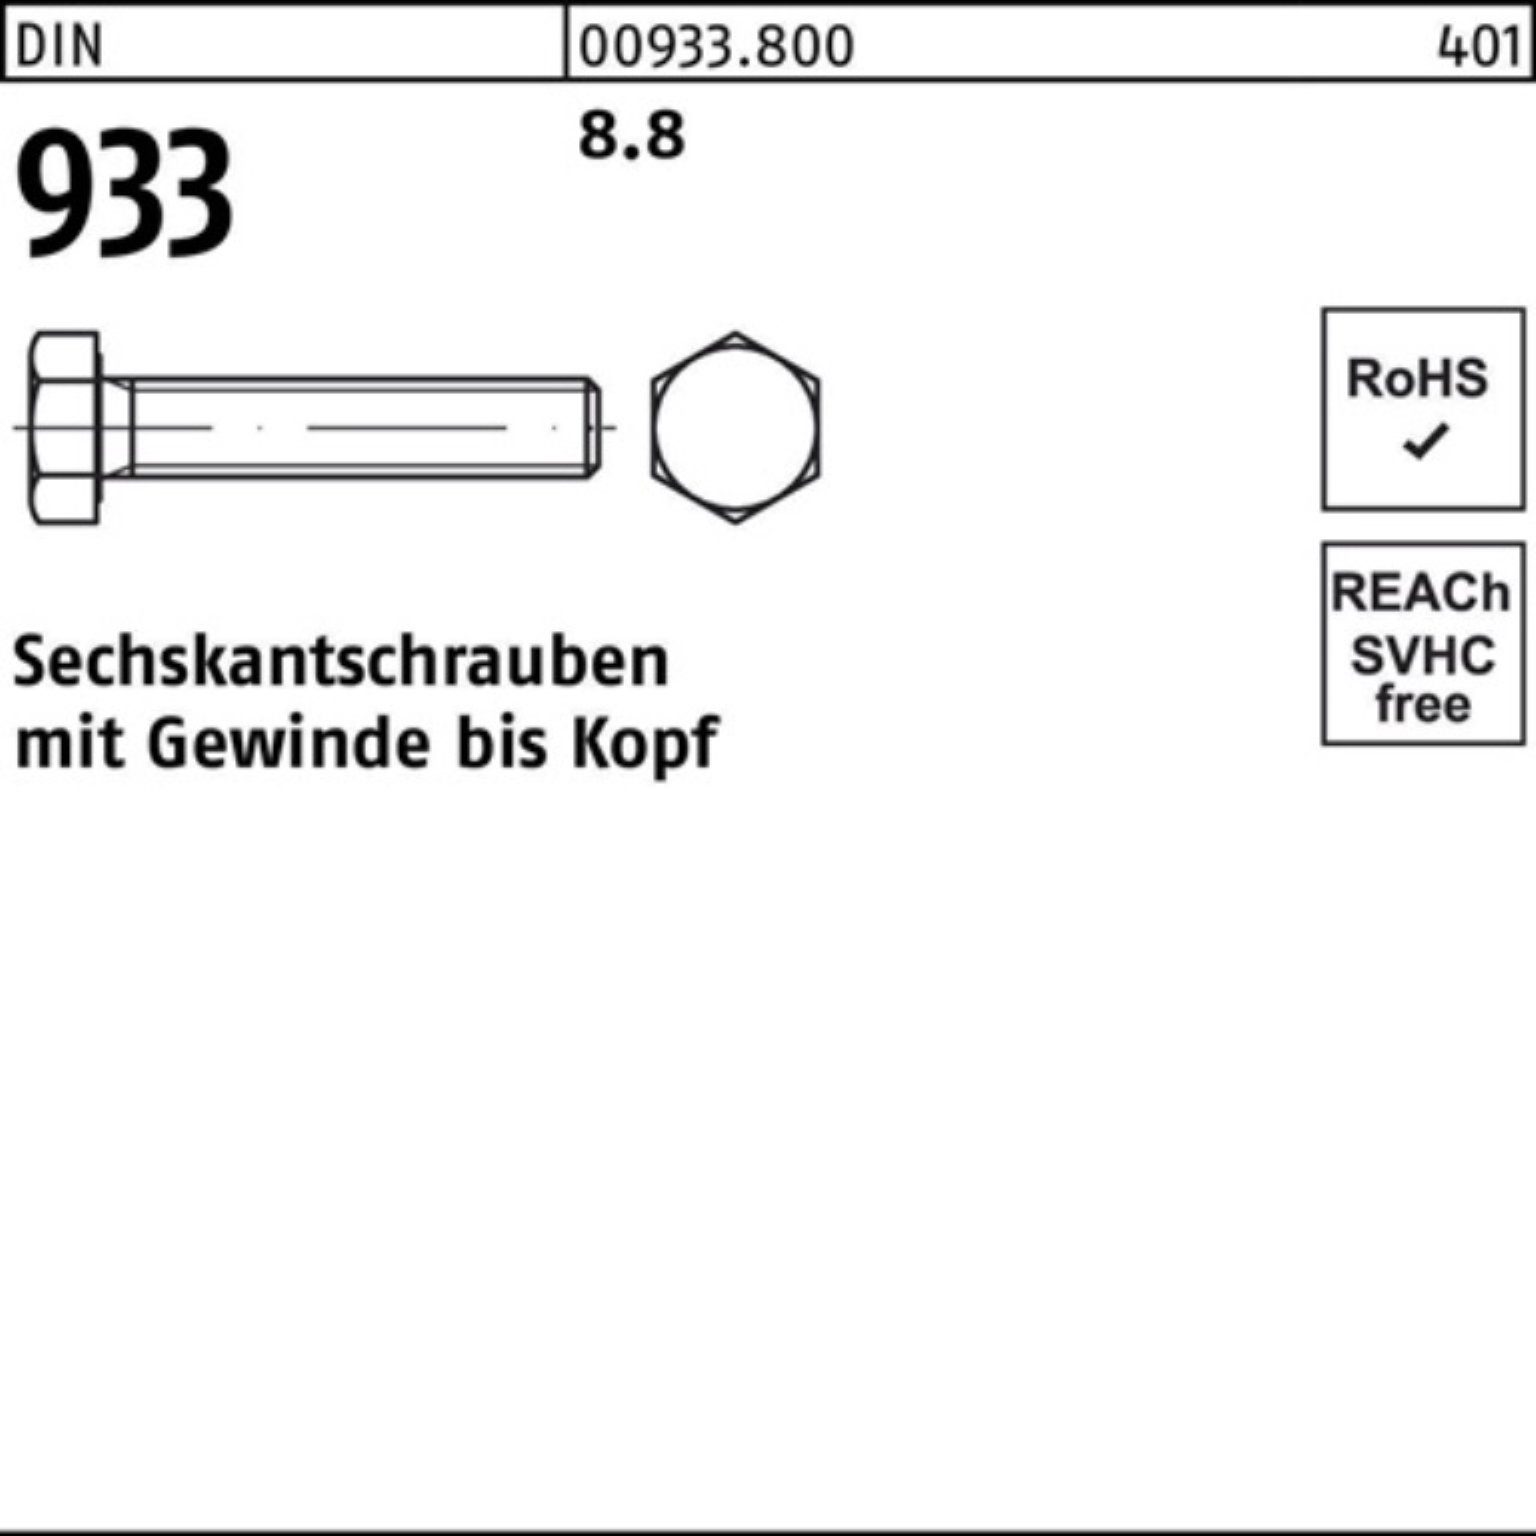 Reyher Sechskantschraube 8.8 130 DIN DIN 933 100er 933 Sechskantschraube M27x VG Stück 1 Pack